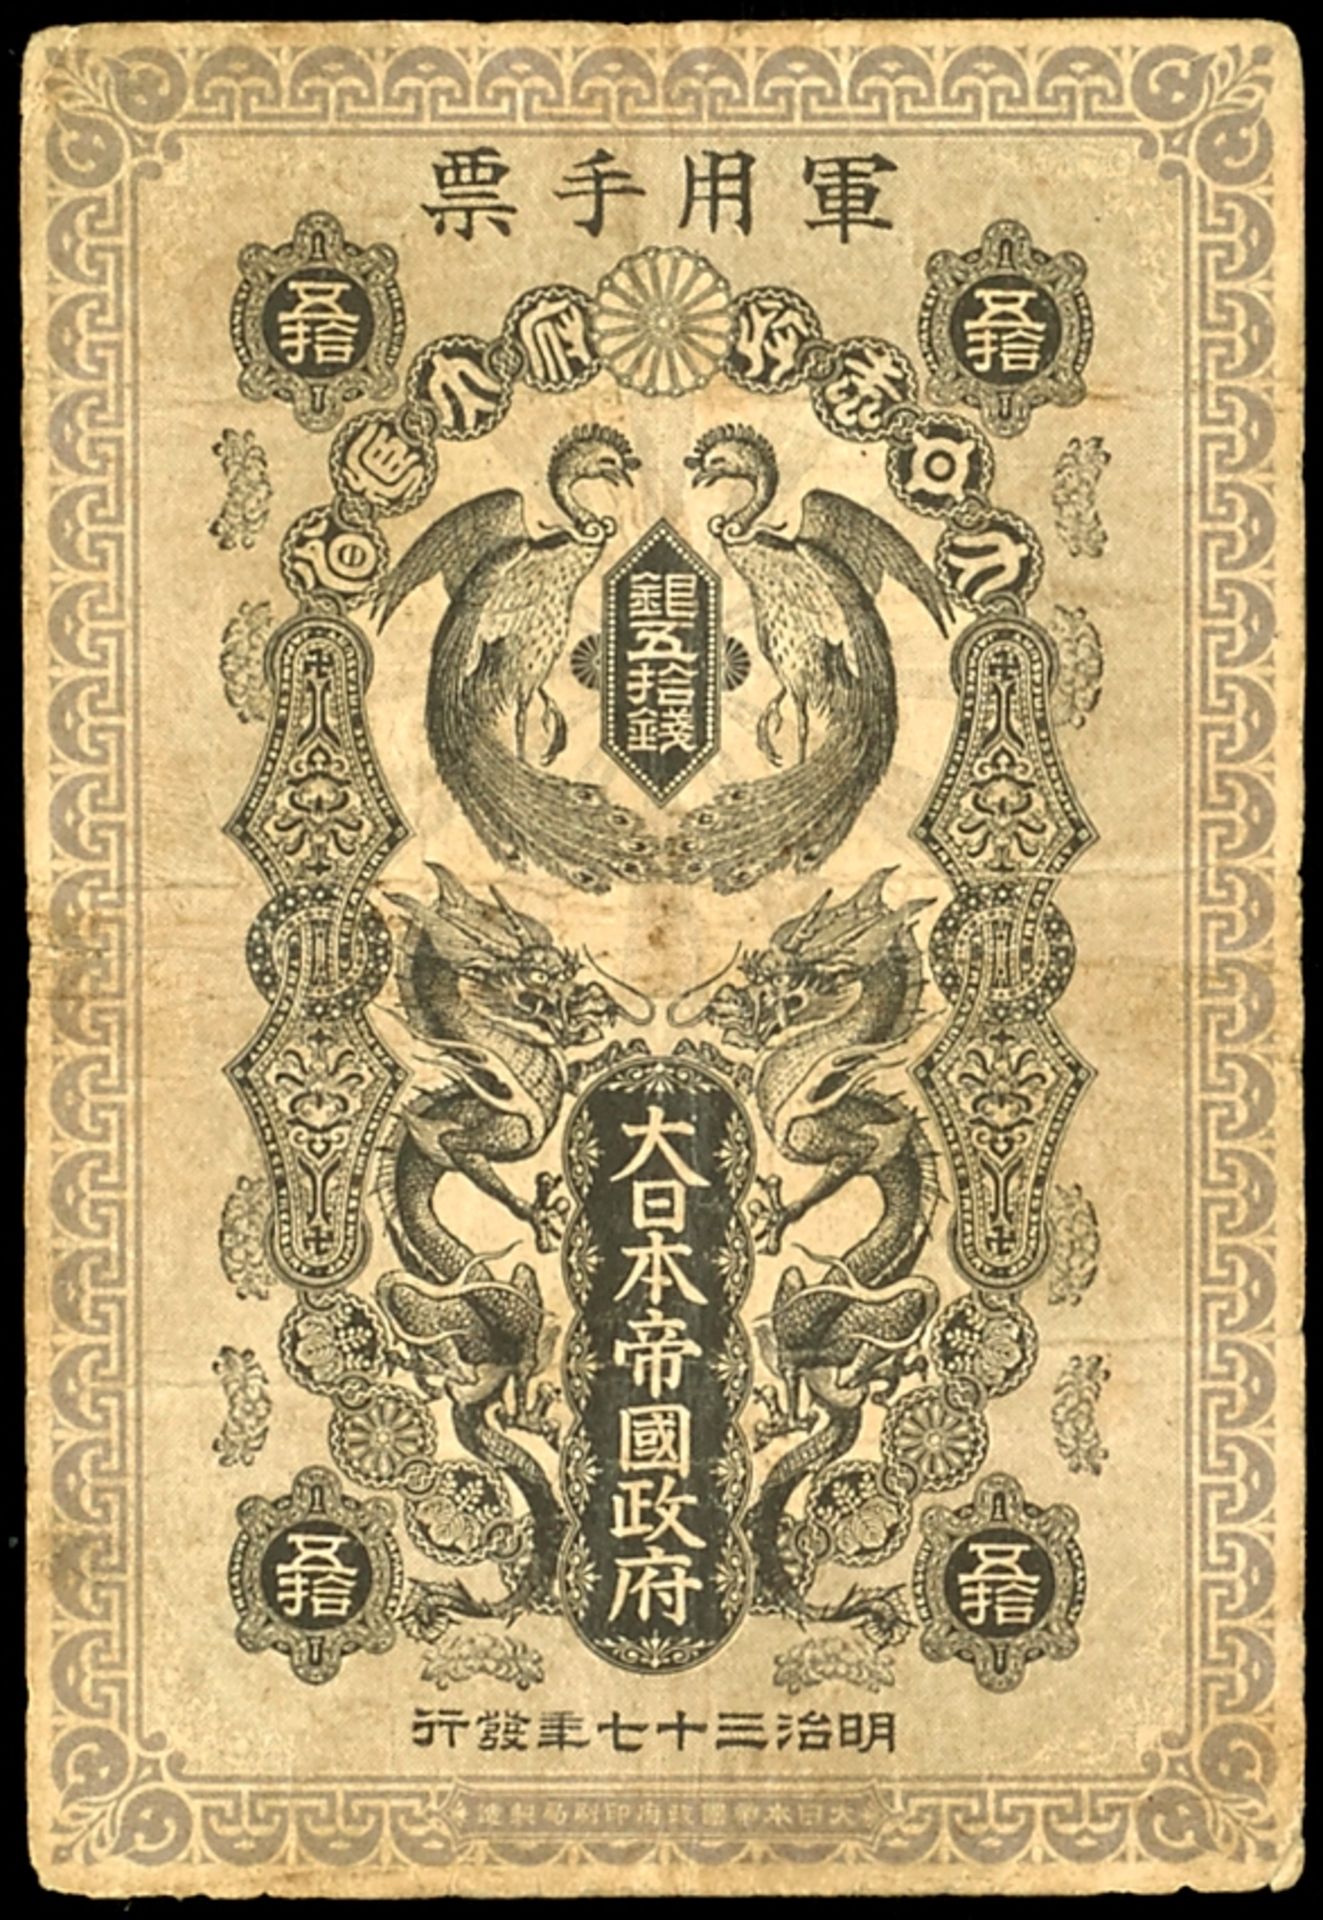 Japan, Russisch-Japanischer Krieg, 50 Sen 1904. Mit Seriennummer auf RS (selten). Rückseitig handsch